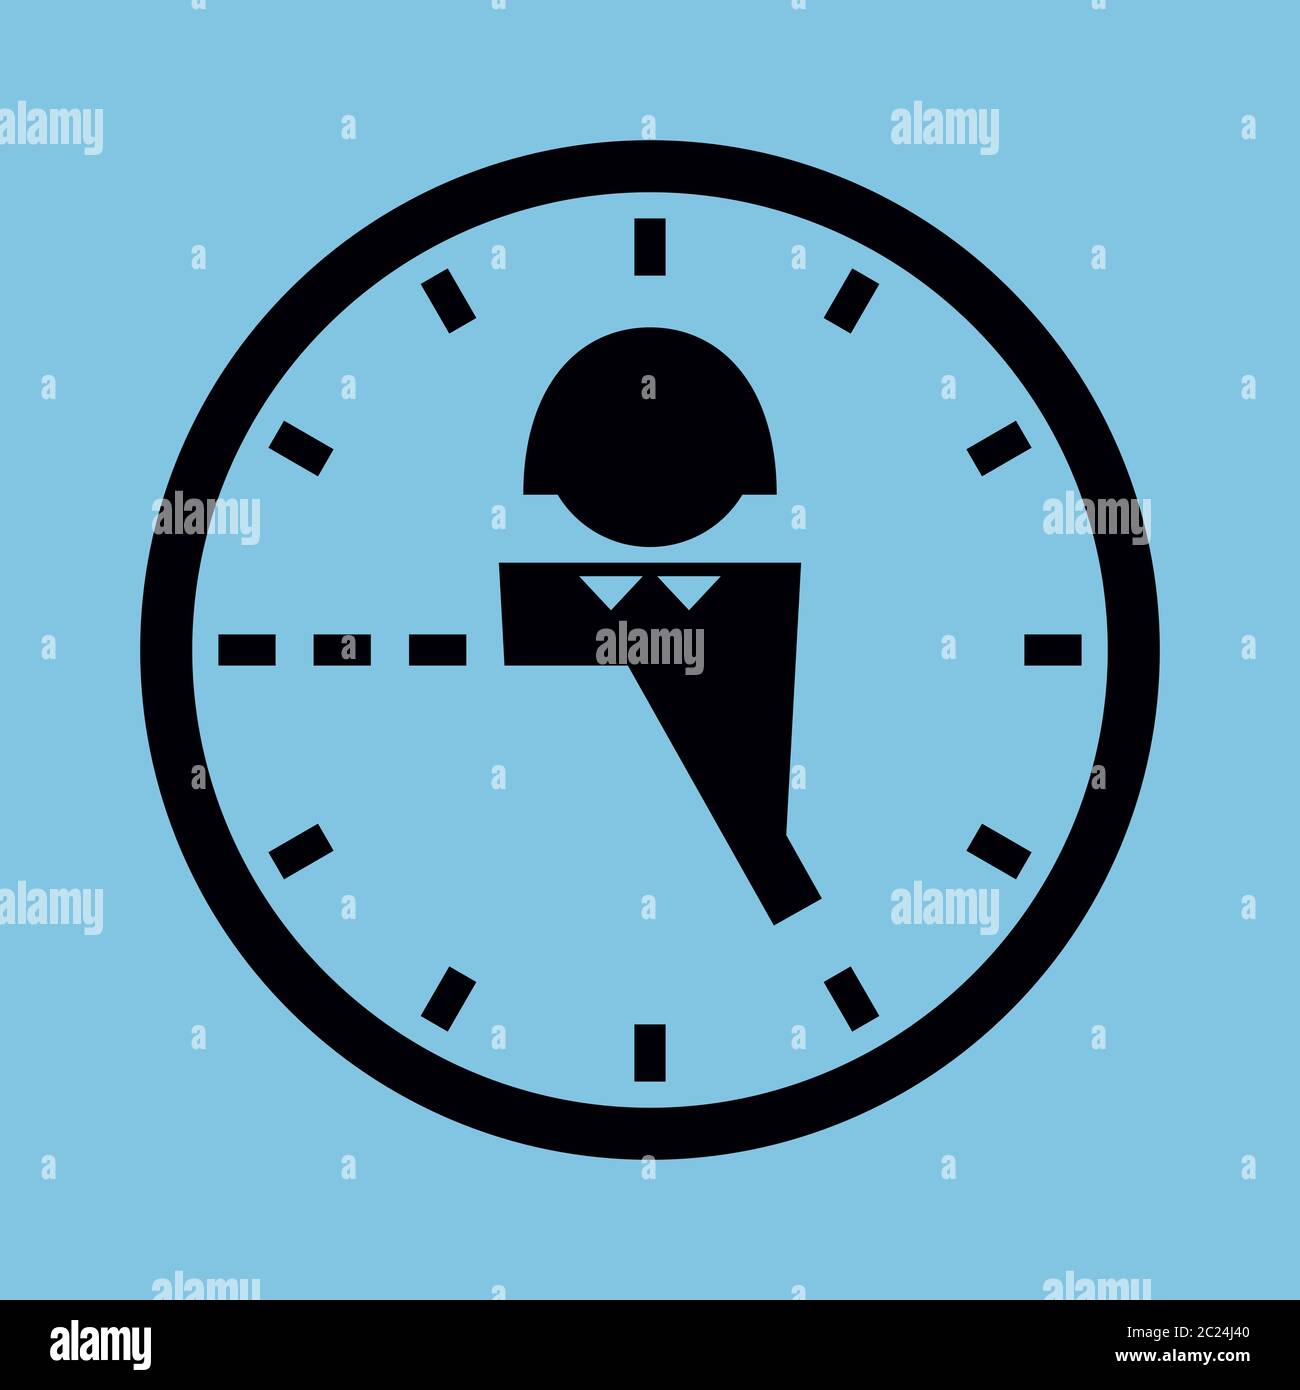 Illustrazione semplificata del vettore. Icona di un orologio e umano, con nove a cinque ore di lavoro contrassegnate. Colori nero e blu. Formato quadrato. Illustrazione Vettoriale